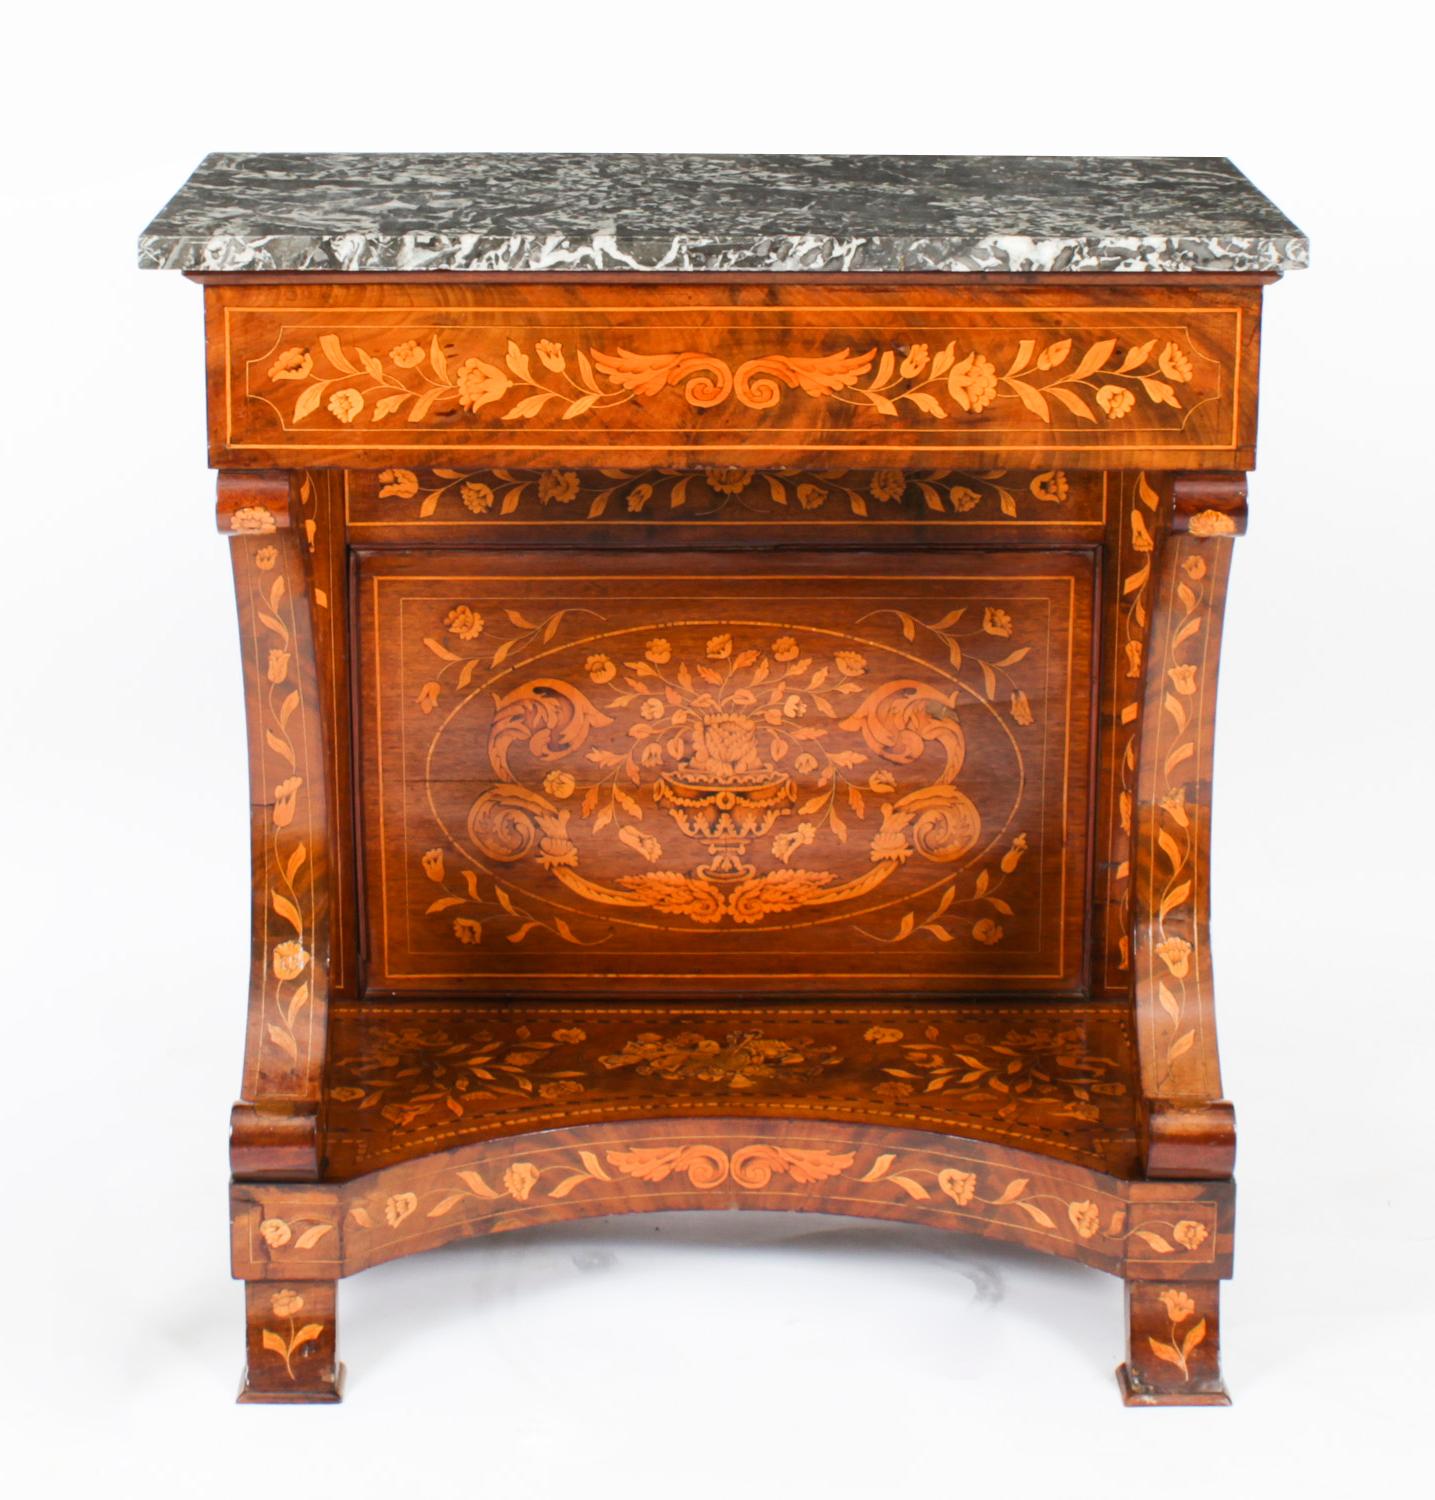 Il s'agit d'une magnifique table console hollandaise ancienne en noyer et marqueterie, datant d'environ 1830.
 
Cette ancienne table console est surmontée d'un superbe plateau en marbre gris St Anne. Le dessus et la frise sont soutenus par des